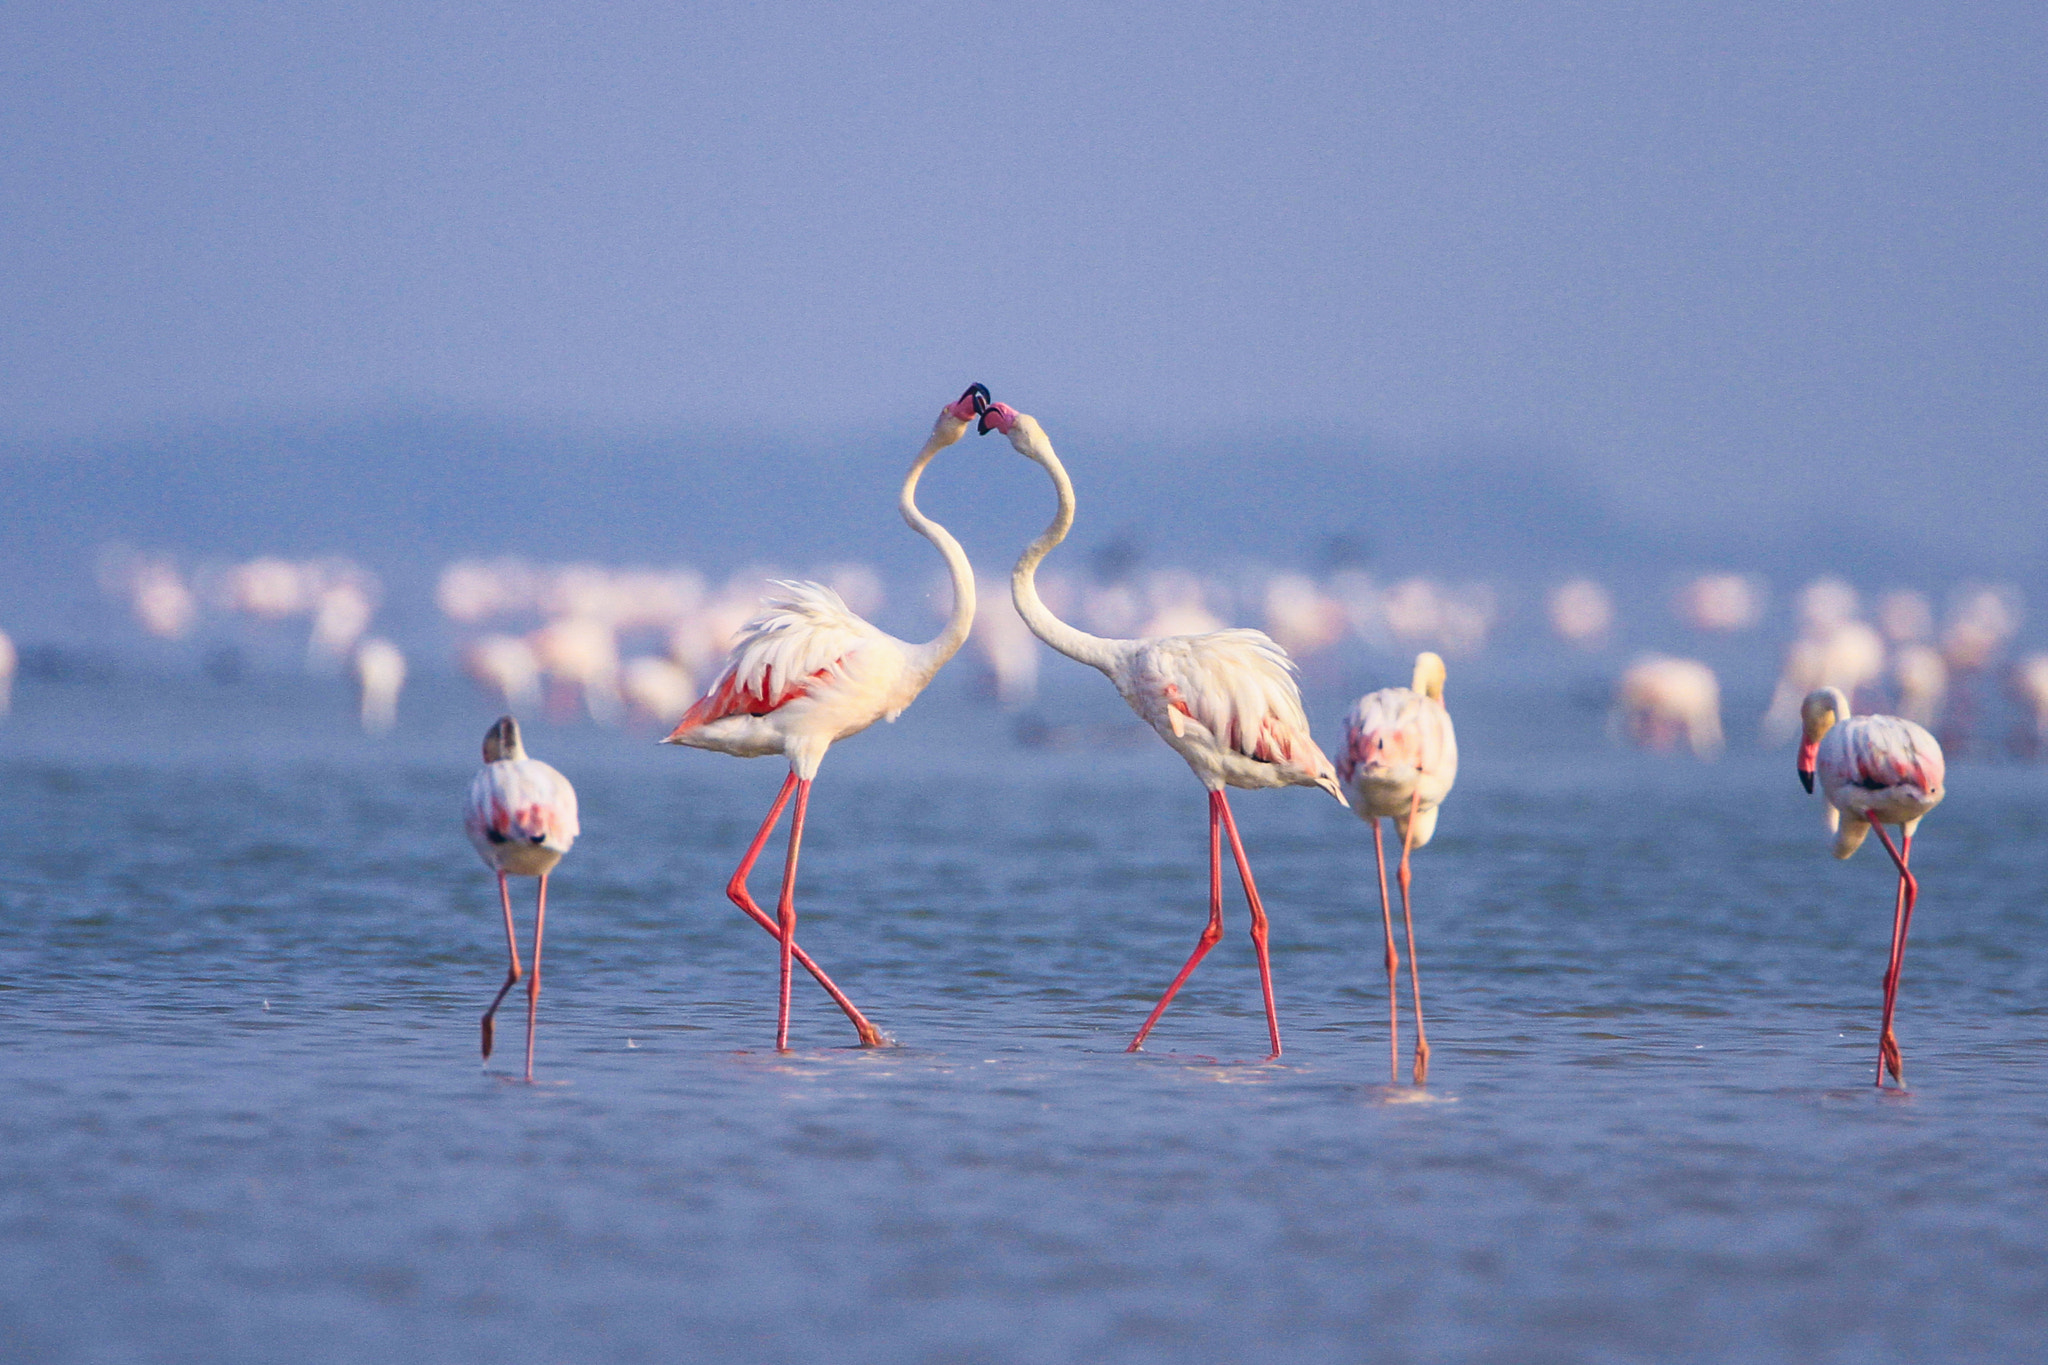 Canon EOS 7D sample photo. Love flamingo photography